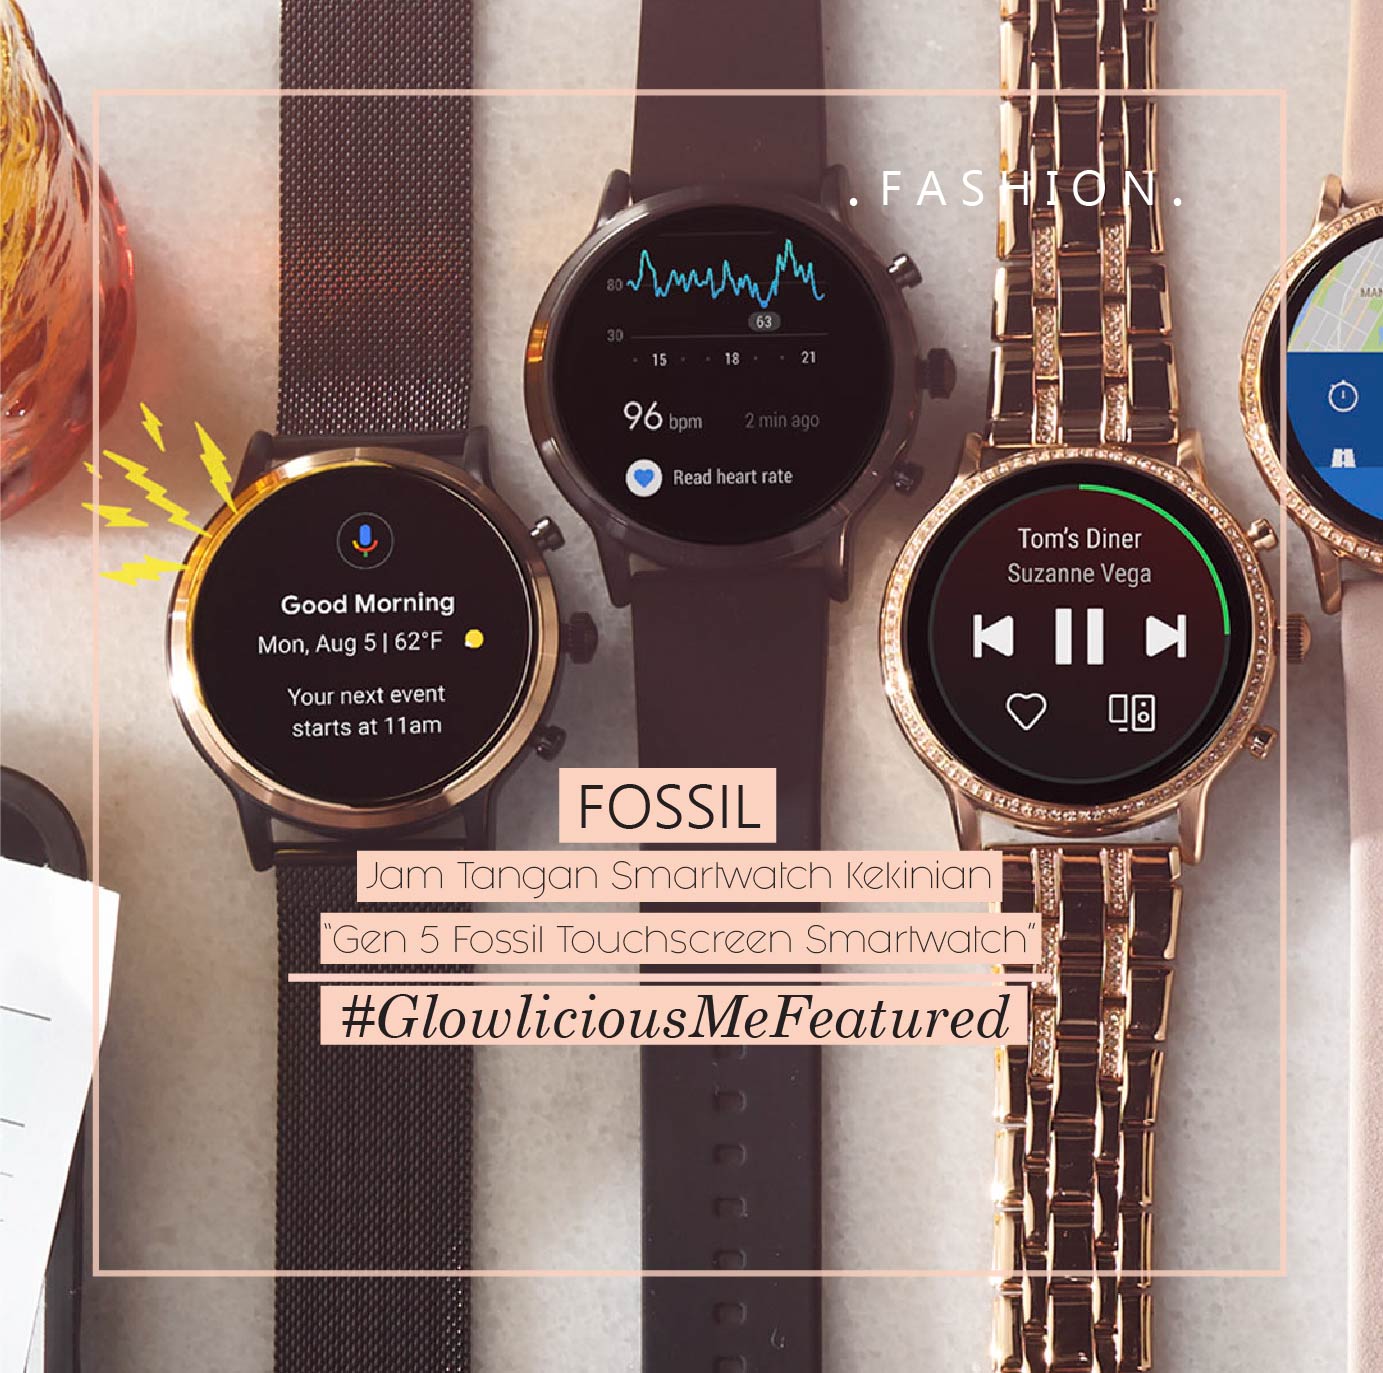 Jam Tangan Smartwatch Kekinian “Gen 5 Fossil Touchscreen Smartwatch” 1